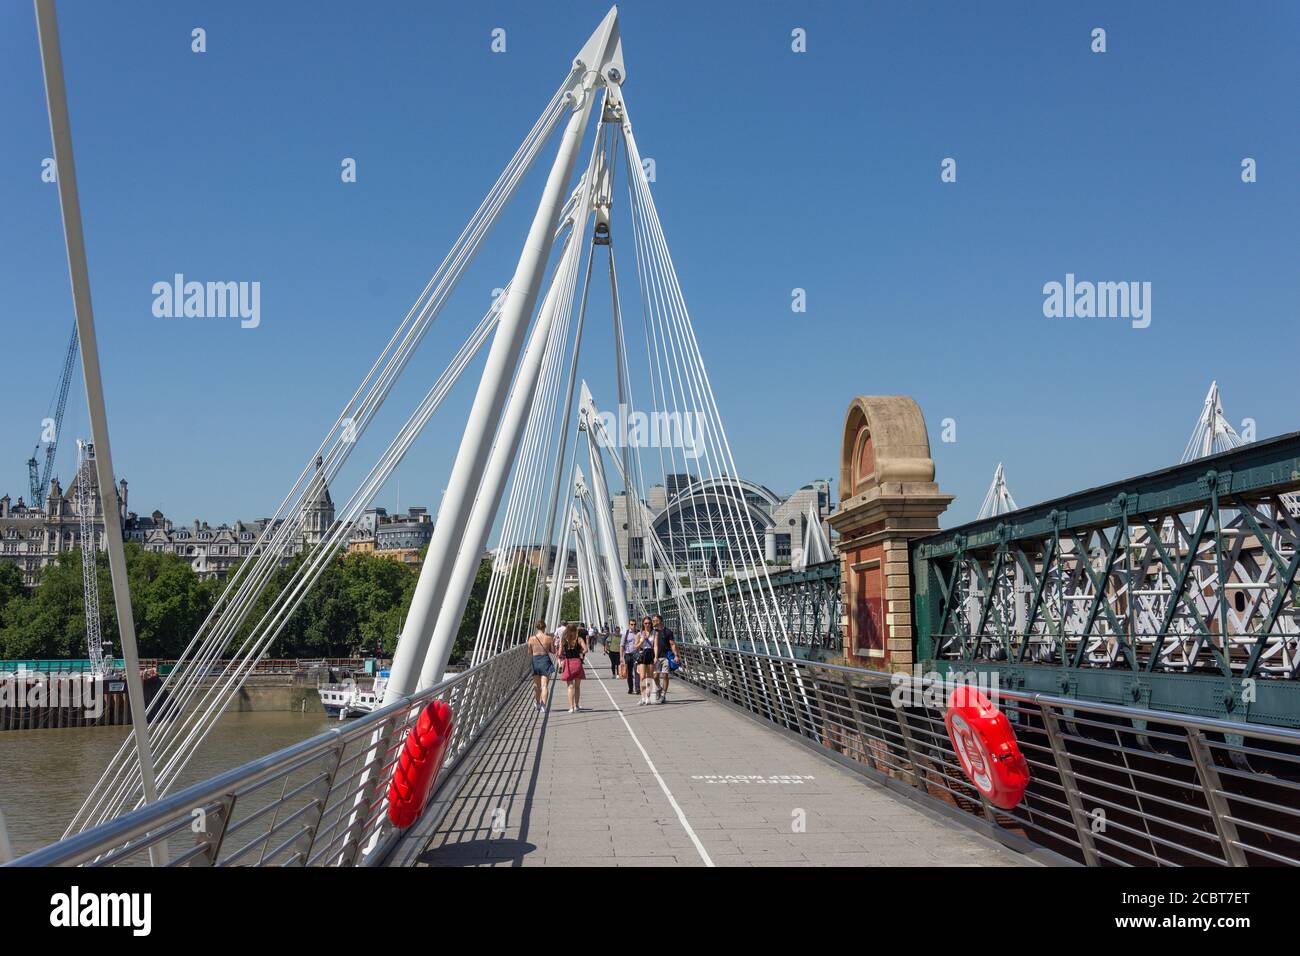 Hungerford Bridge et Golden Jubilee passerelle pour piétons à travers Tamise, London Borough of Lambeth, Greater London, Angleterre, Royaume-Uni Banque D'Images